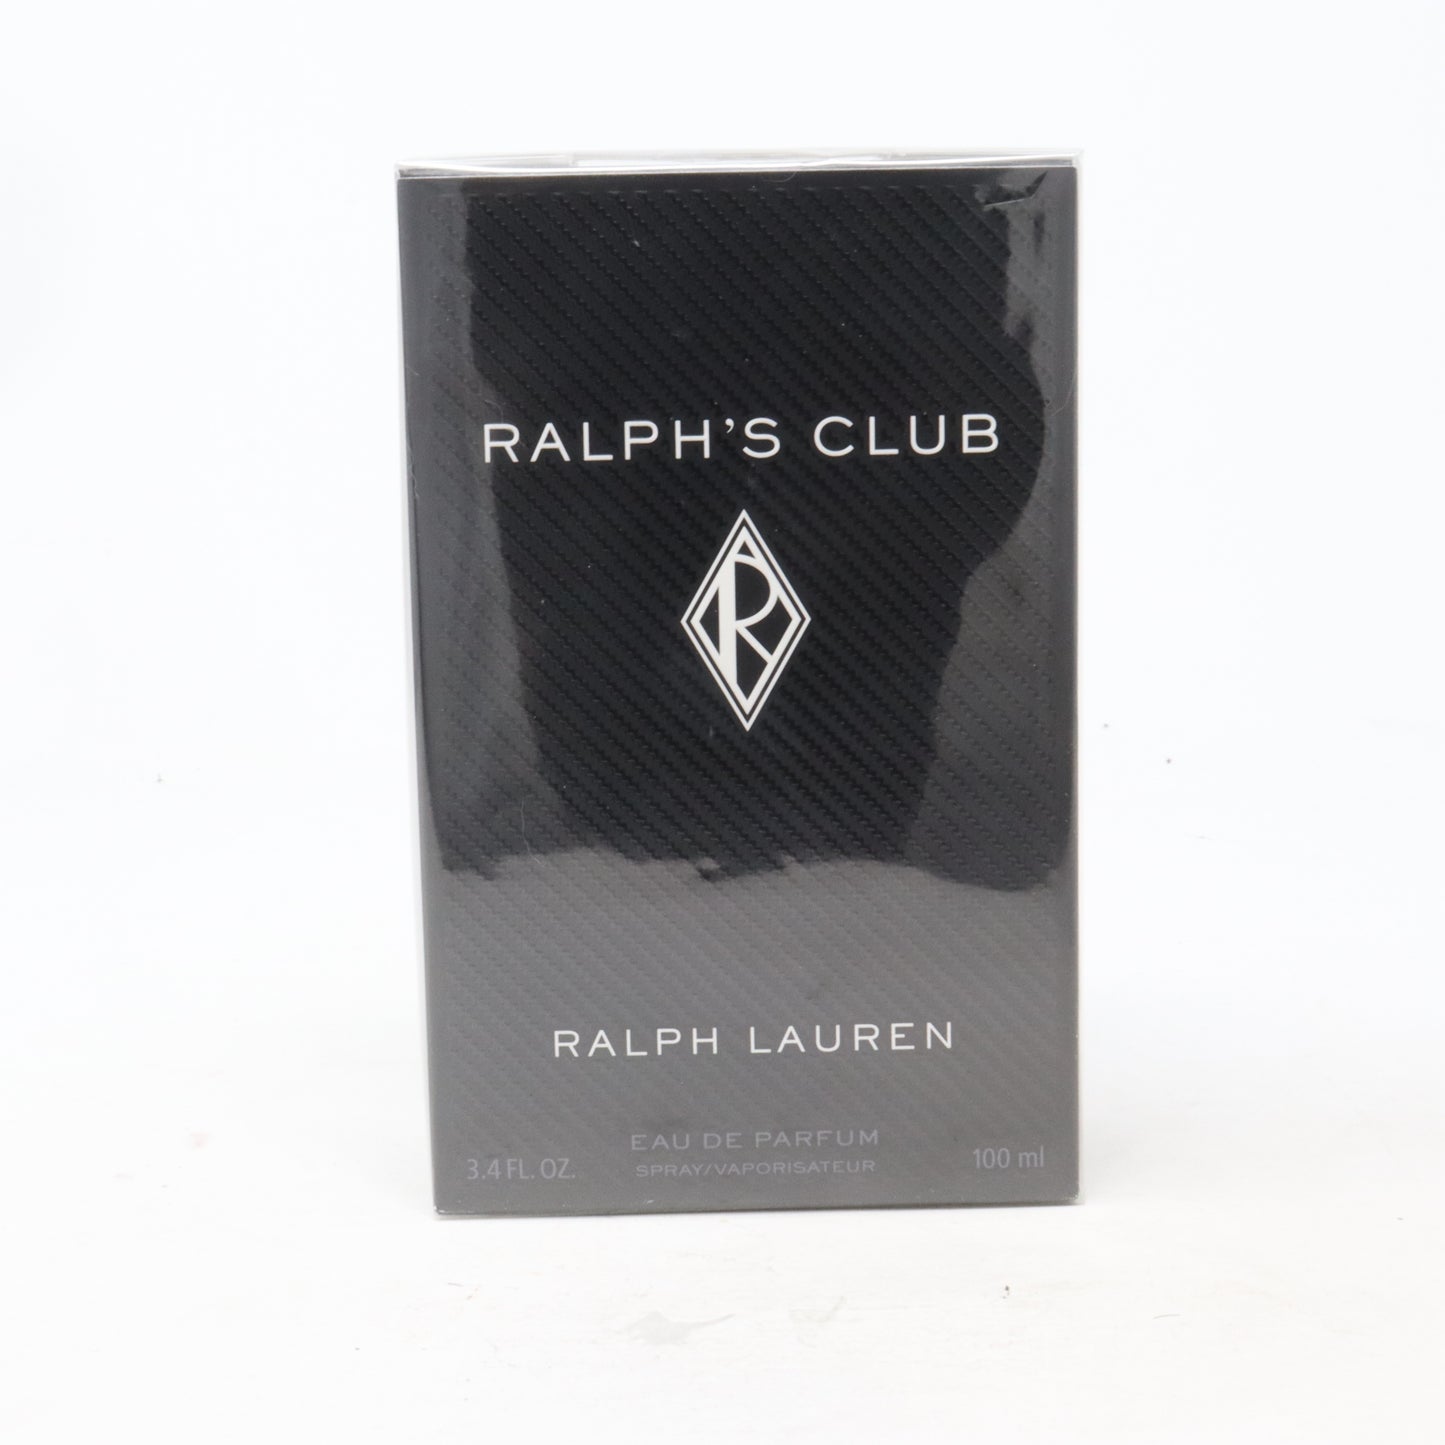 Ralph's Club Eau De Parfum 100 ml